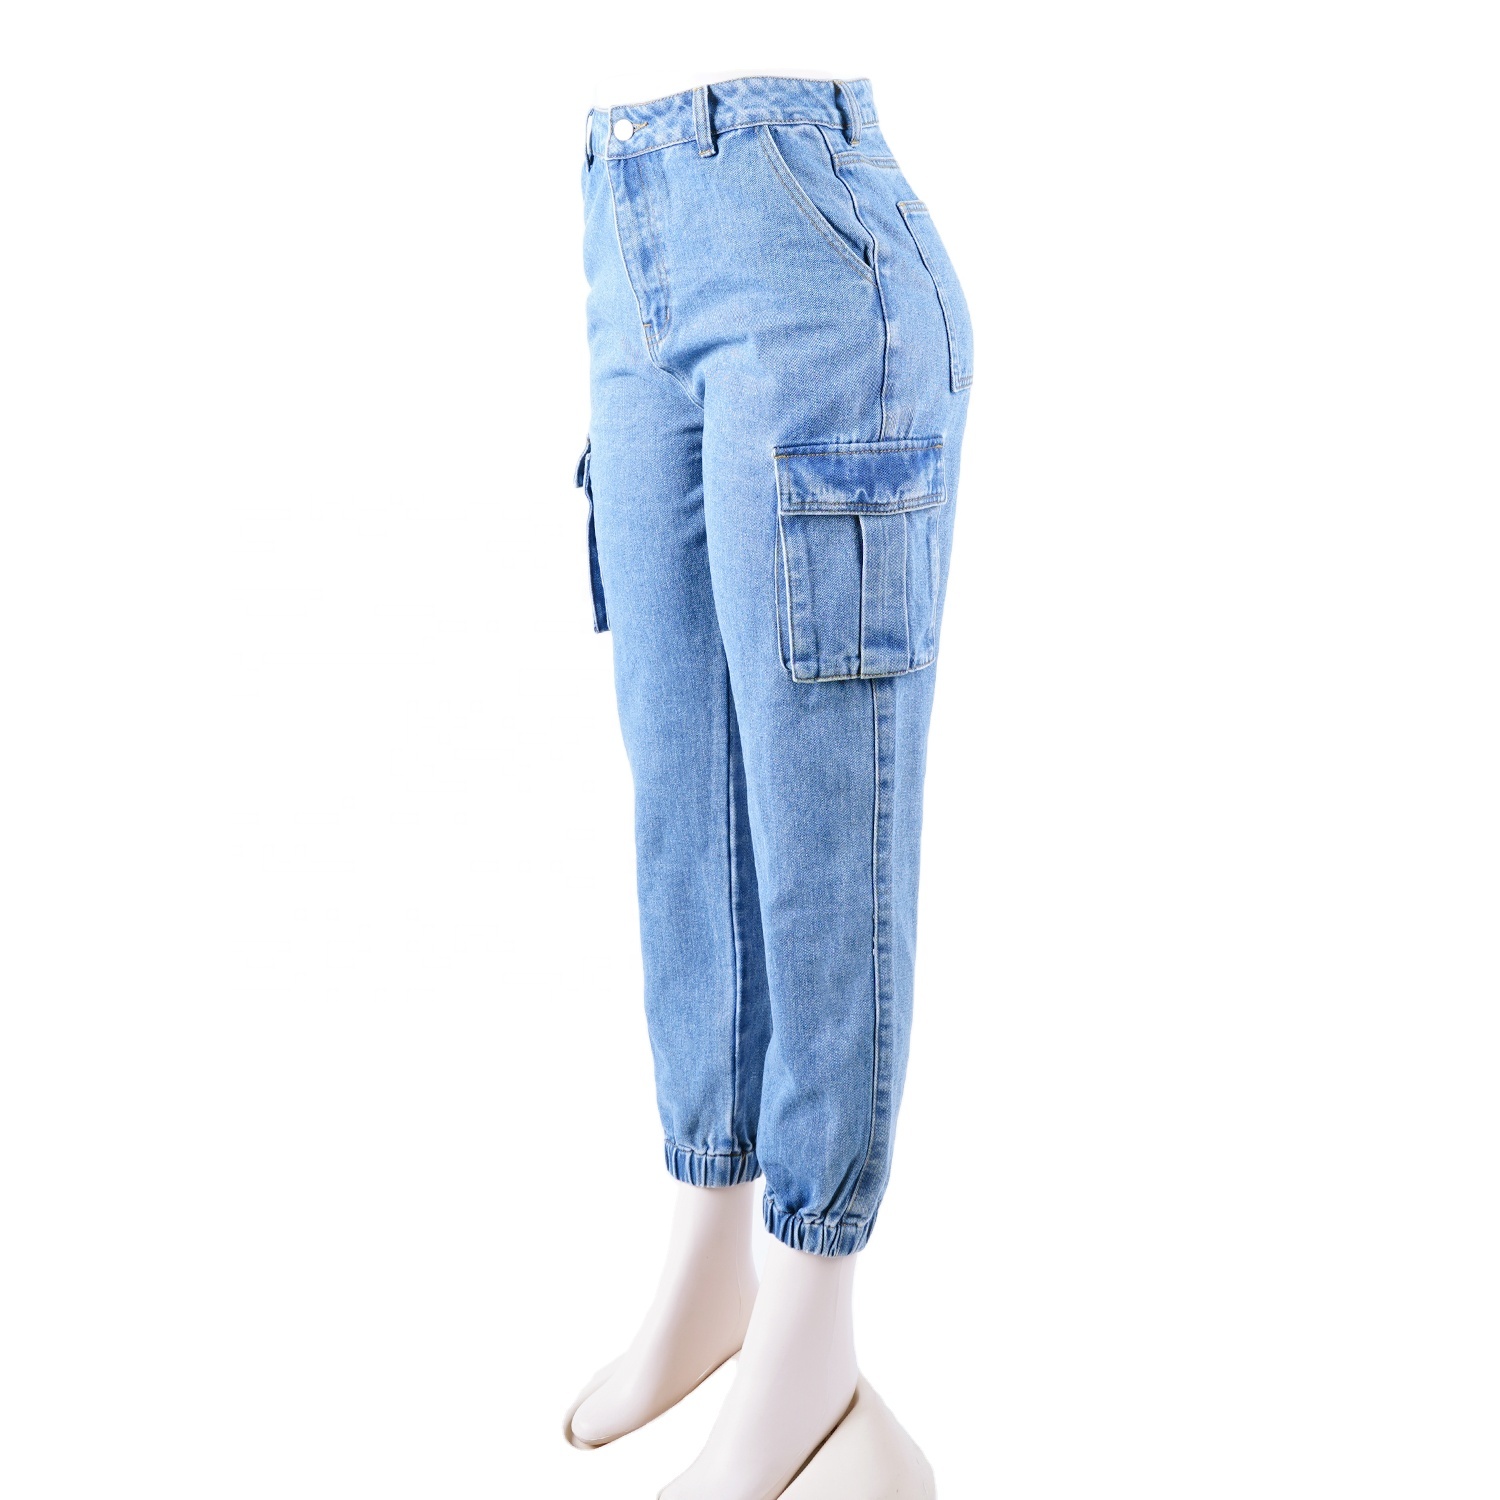 SKYKINGDOM factory wholesale denim jeans street wear motor biker pockets blue jeans for women